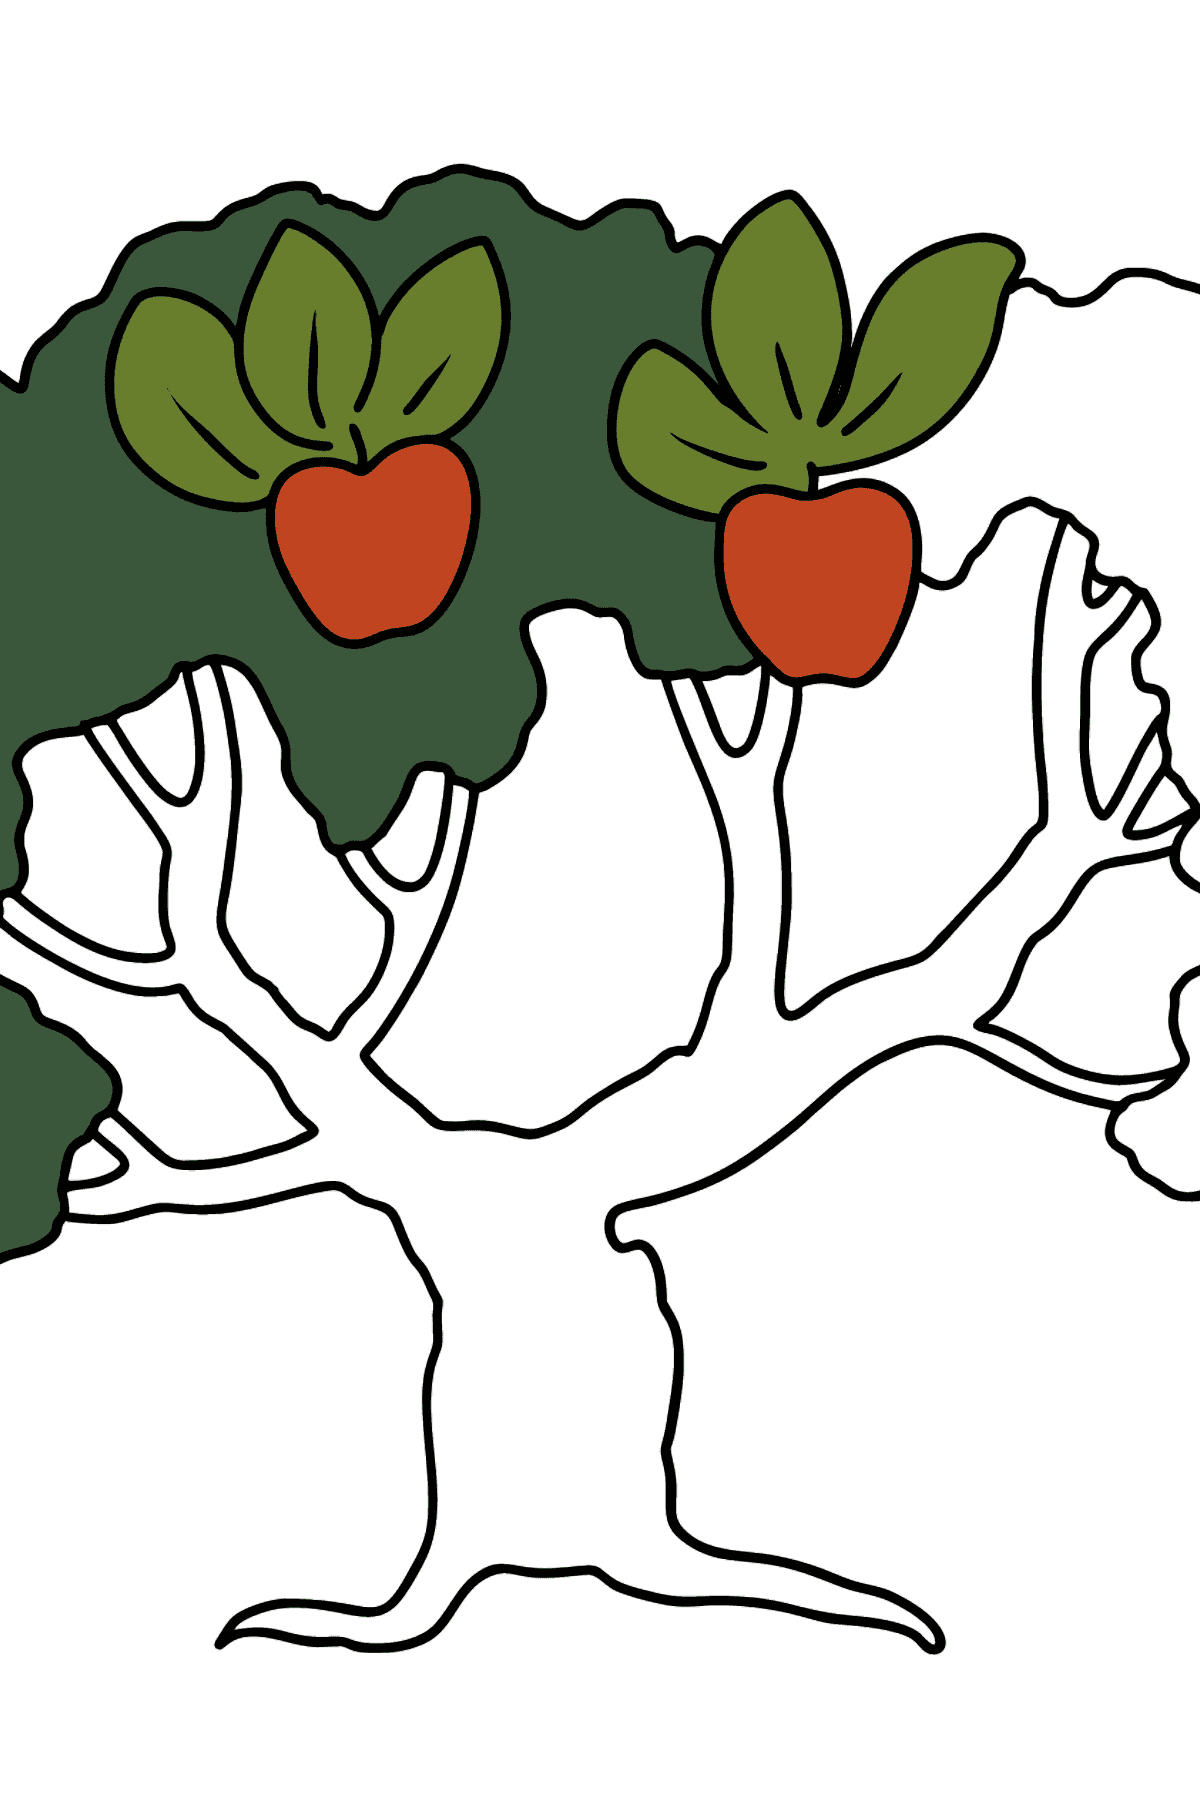 Mewarnai gambar pohon apel - Mewarnai gambar untuk anak-anak